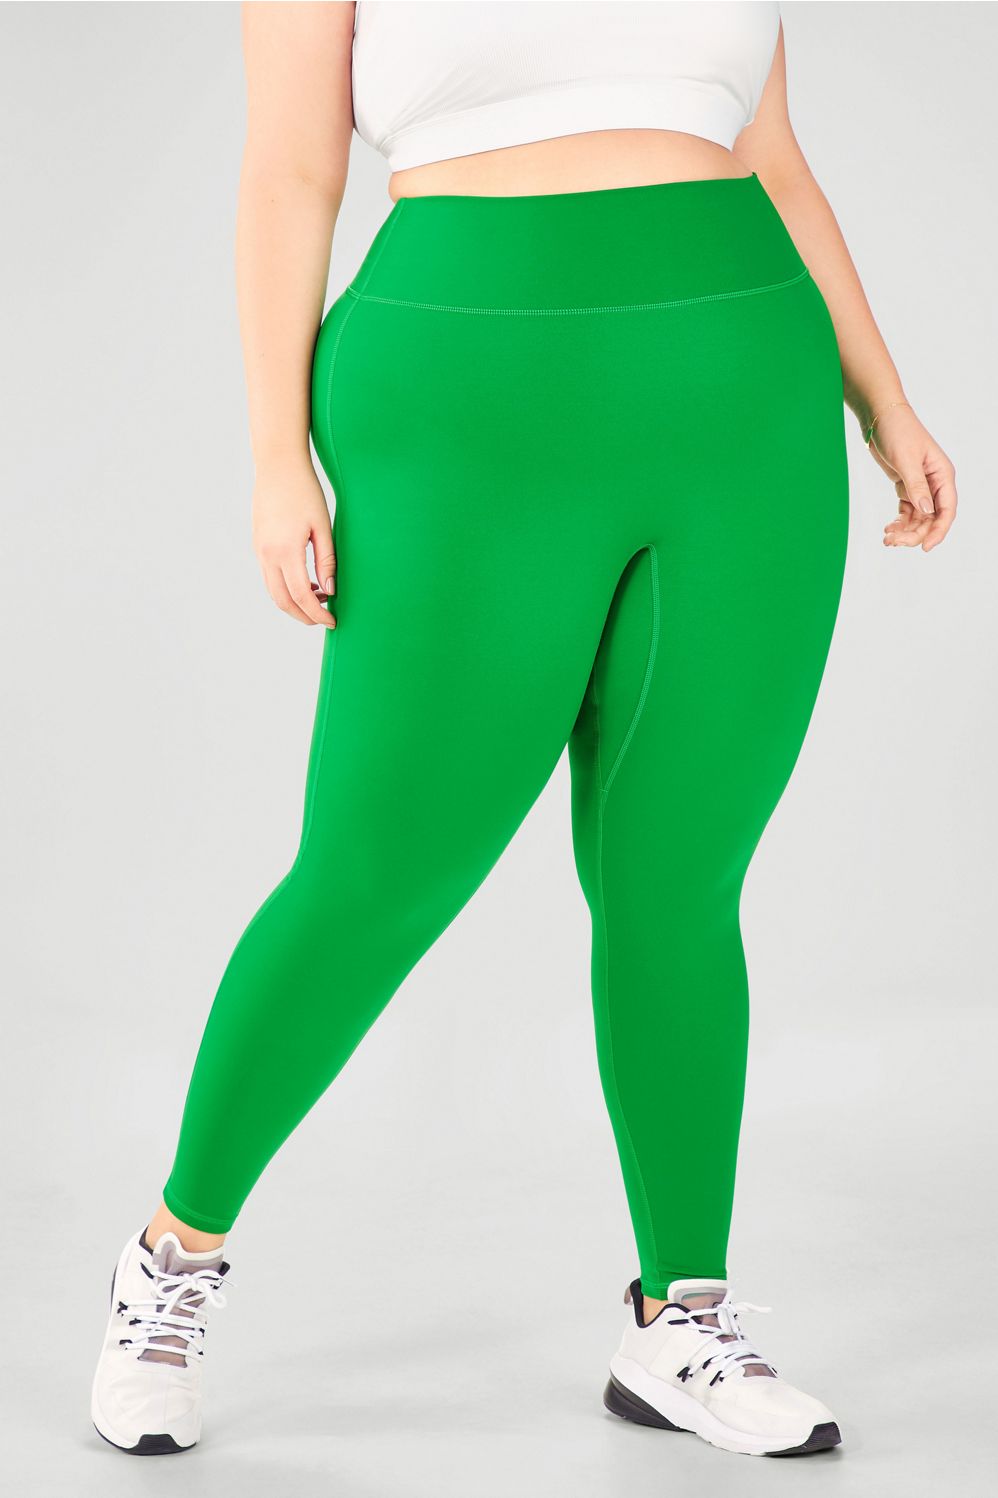 green and white leggings